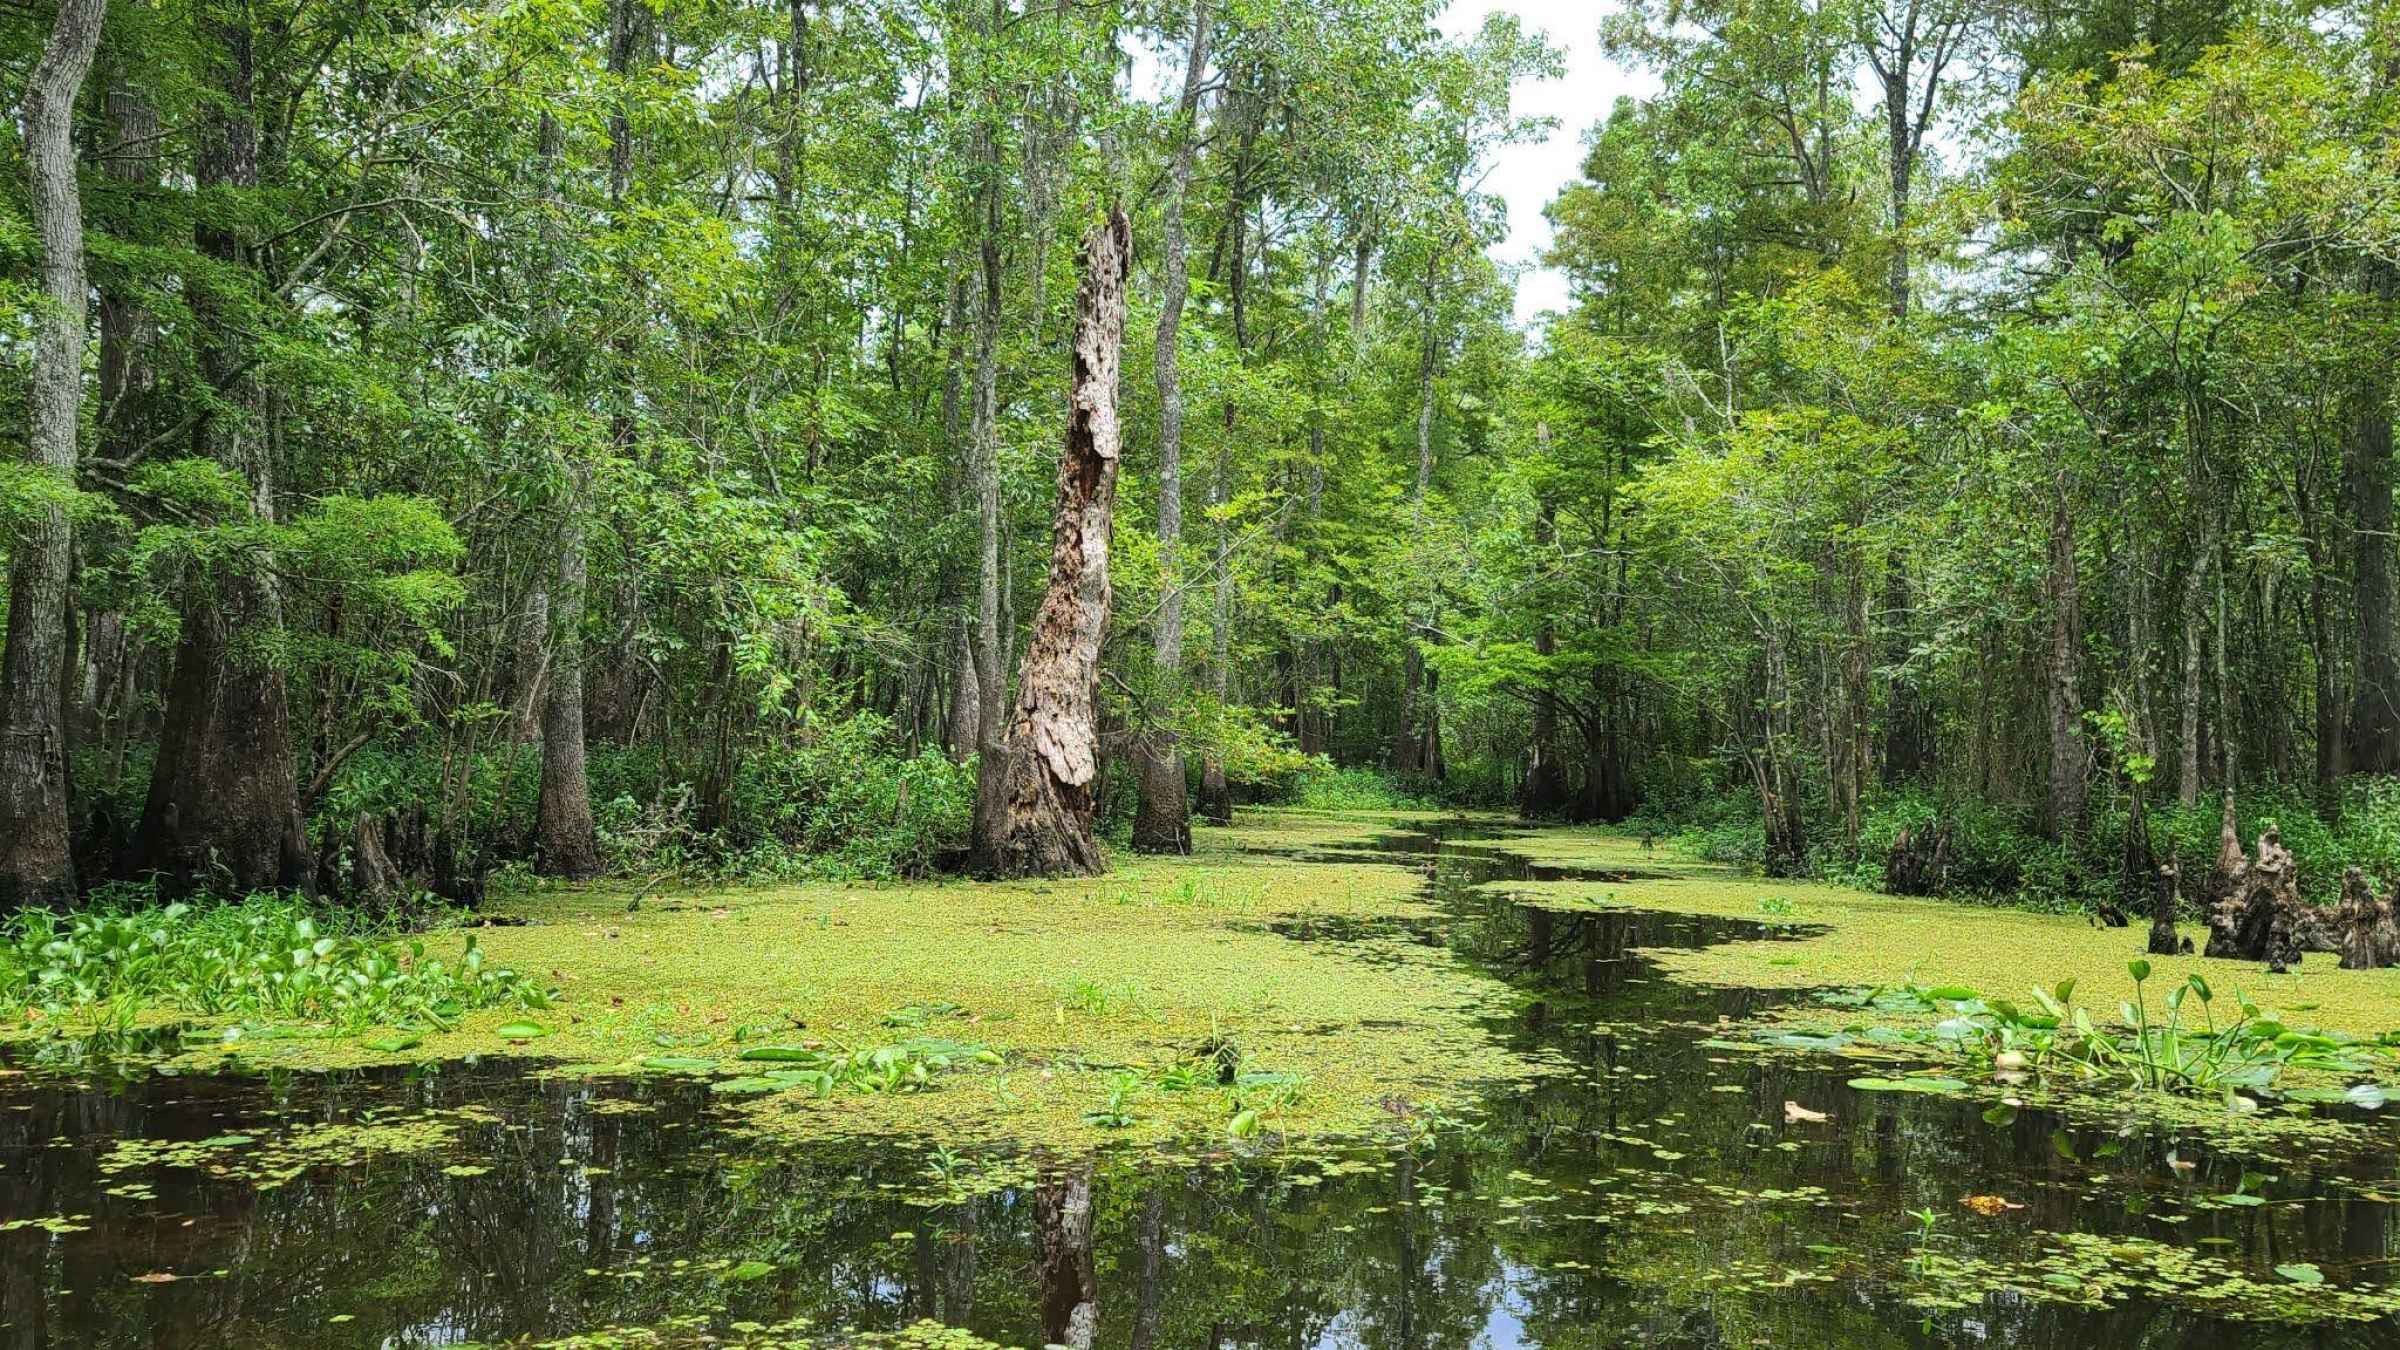 Koye feche area swampy seasonal wetland source